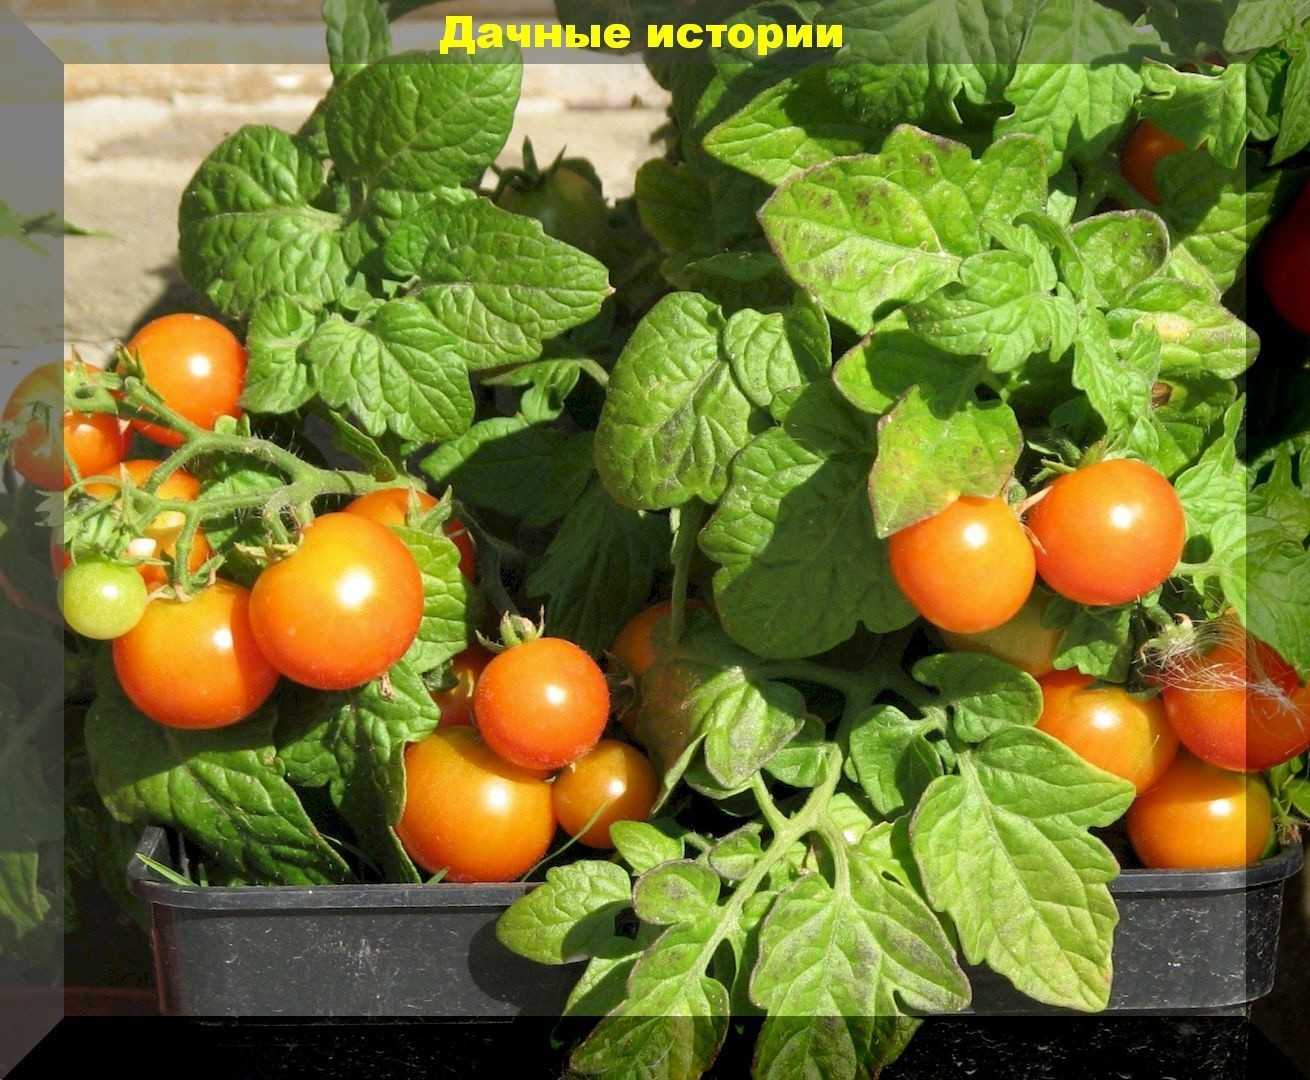 Выращивание помидор на балконе или подоконнике. Основные моменты - простыми словами